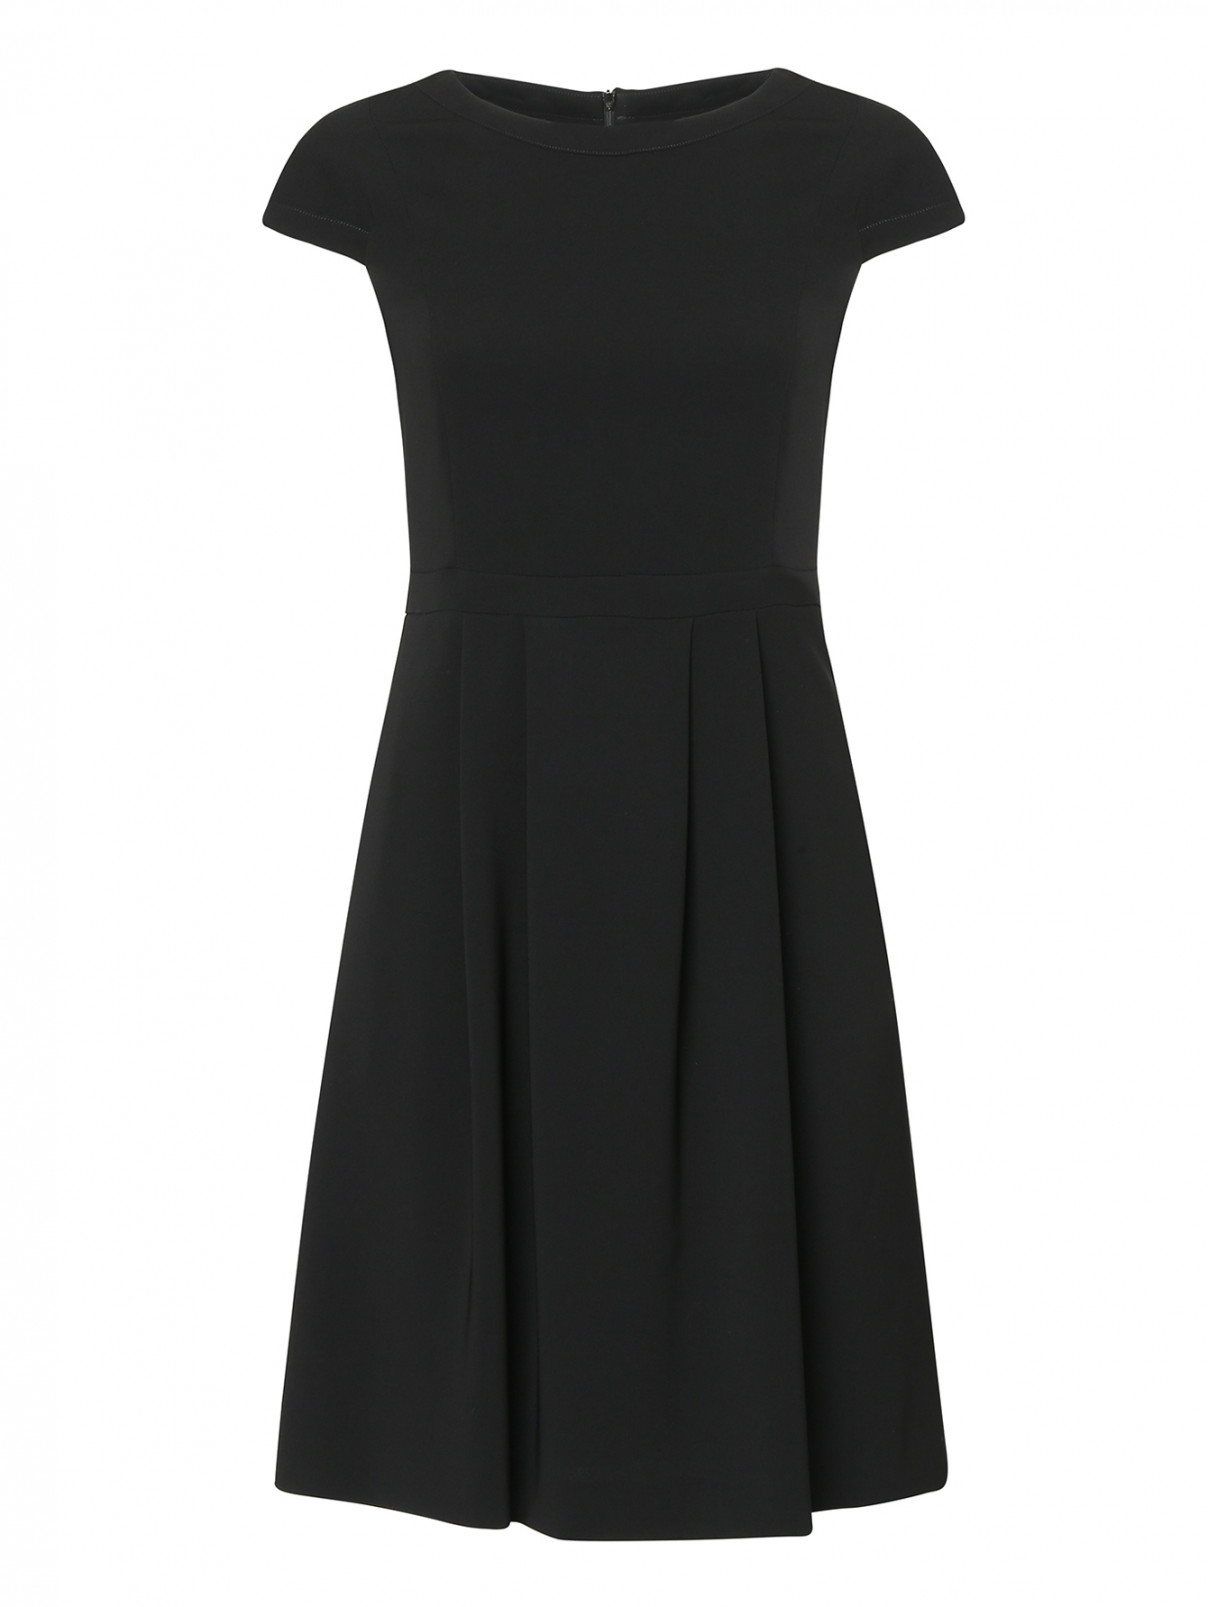 Платье футляр с коротким рукавом Max Mara  –  Общий вид  – Цвет:  Черный